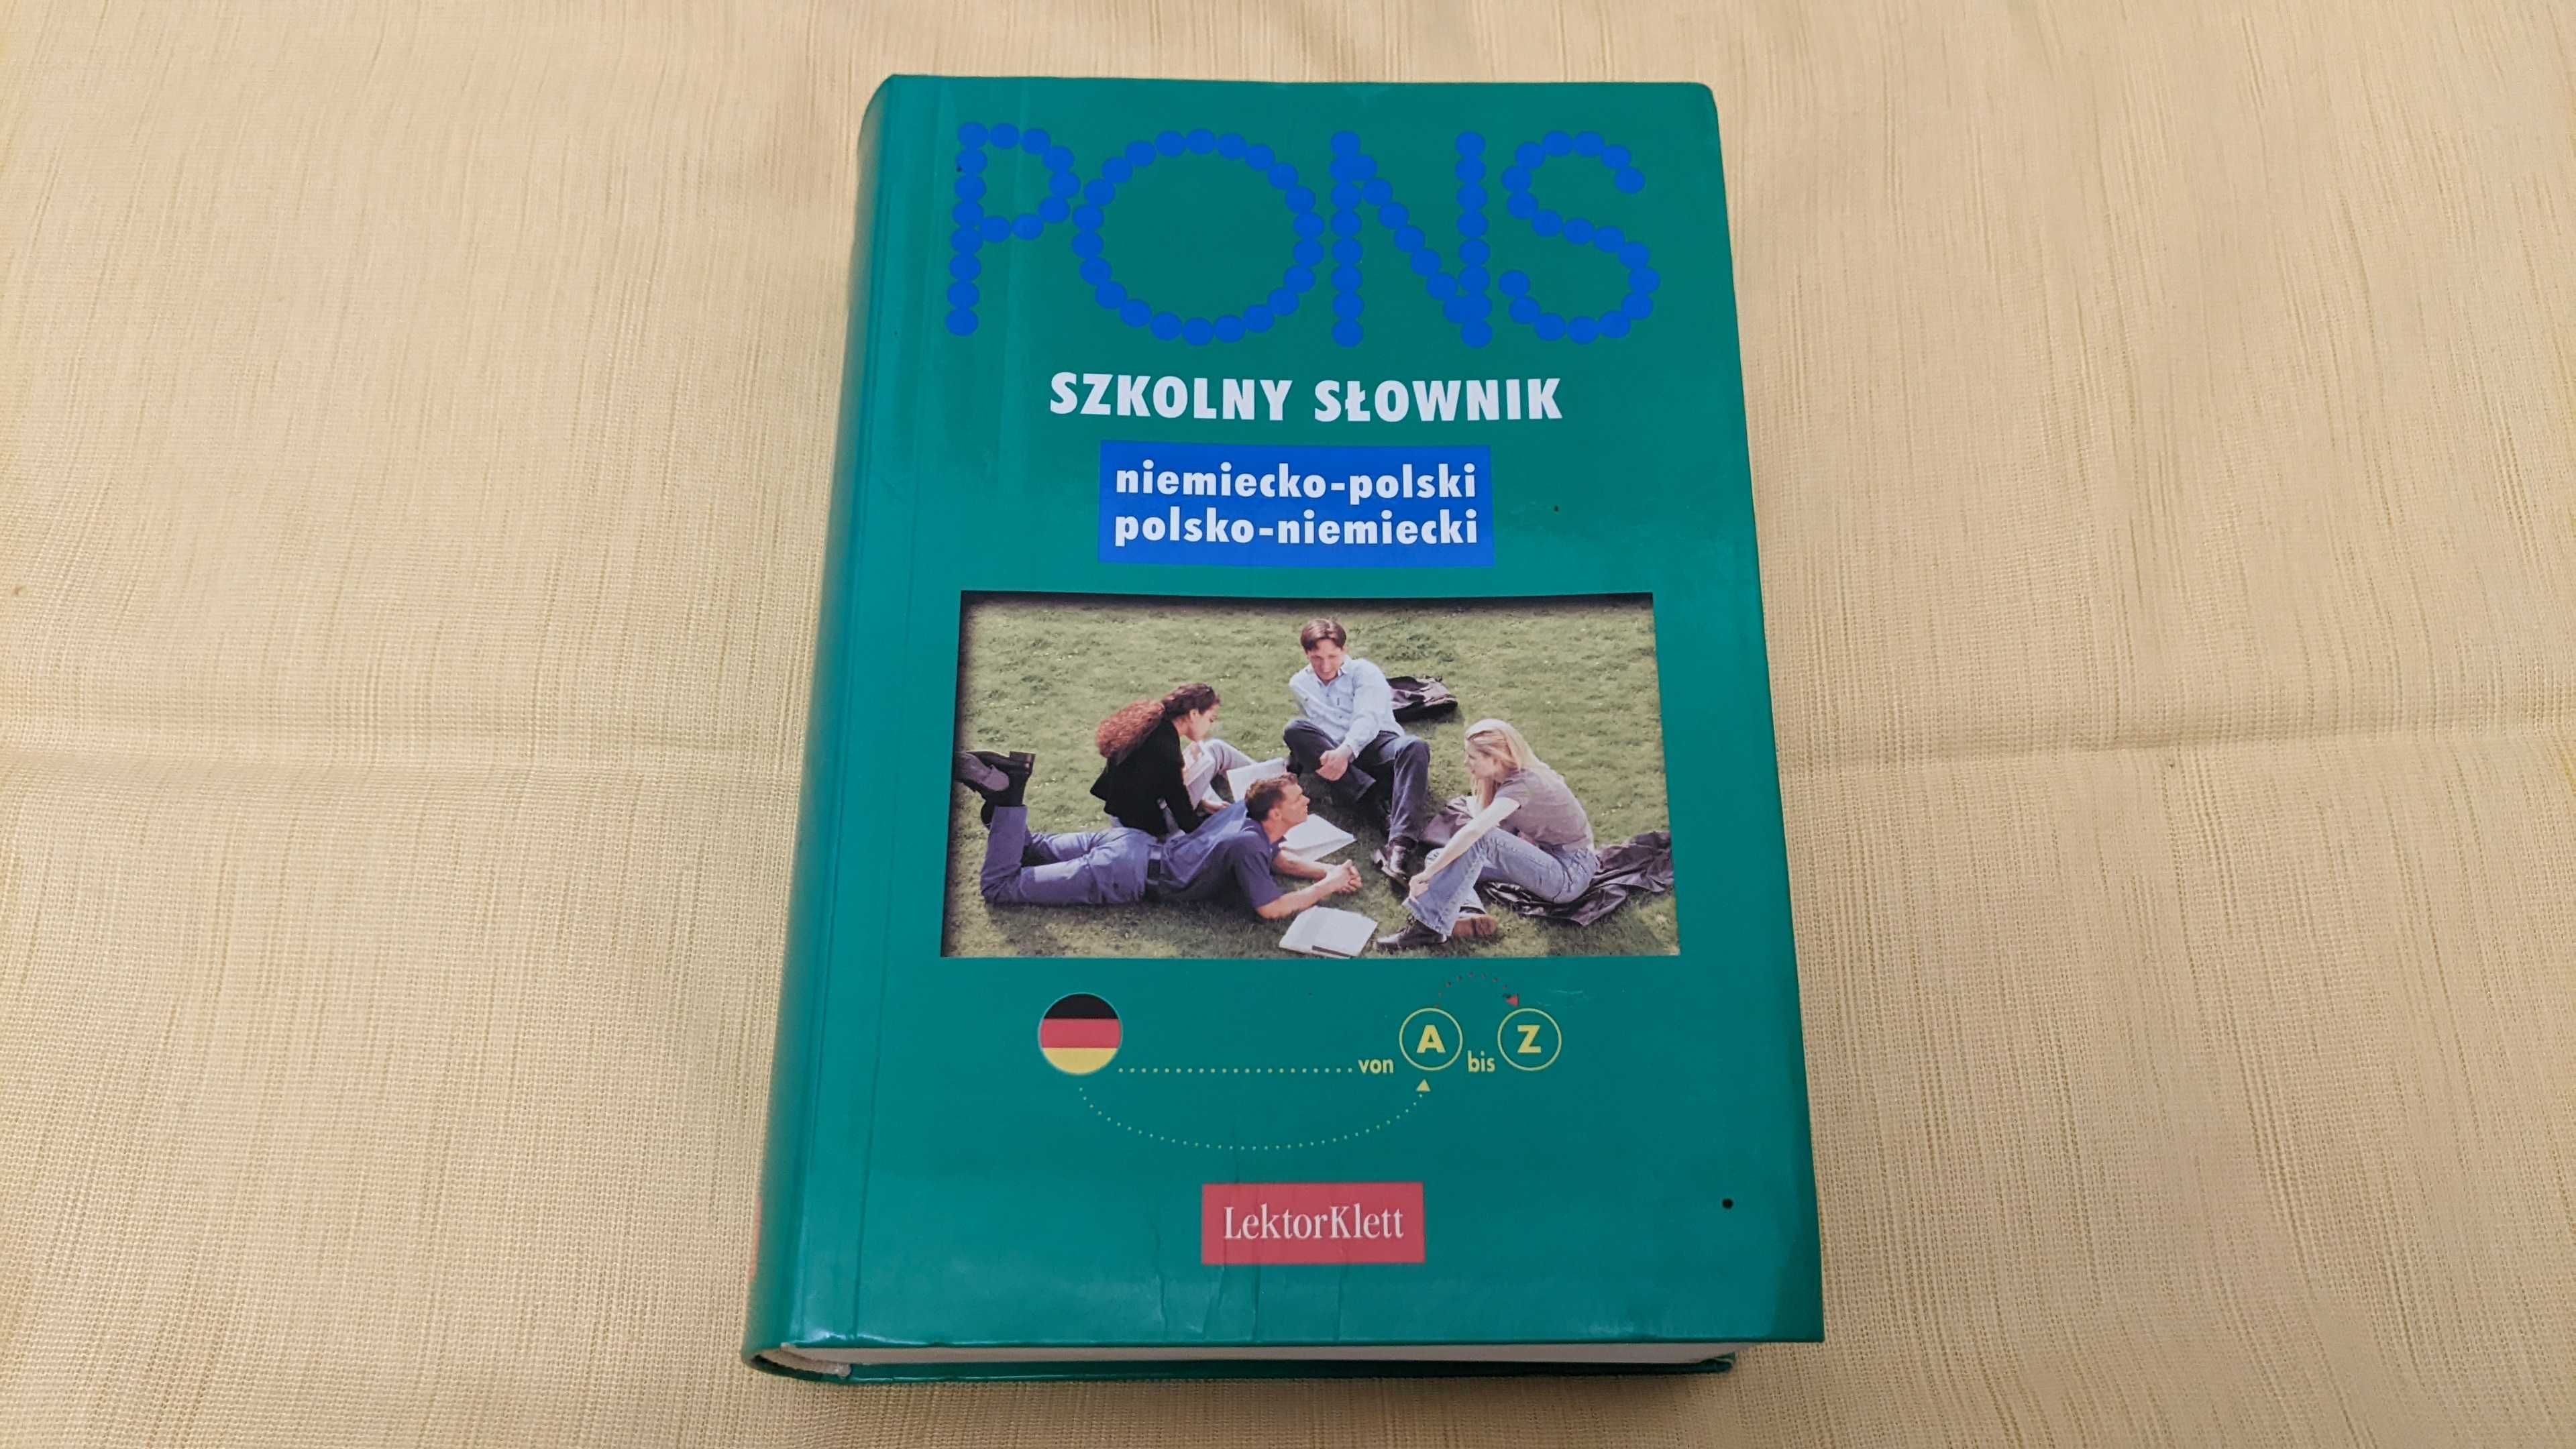 PONS — słownik szkolny niemiecko-polski polsko-niemiecki